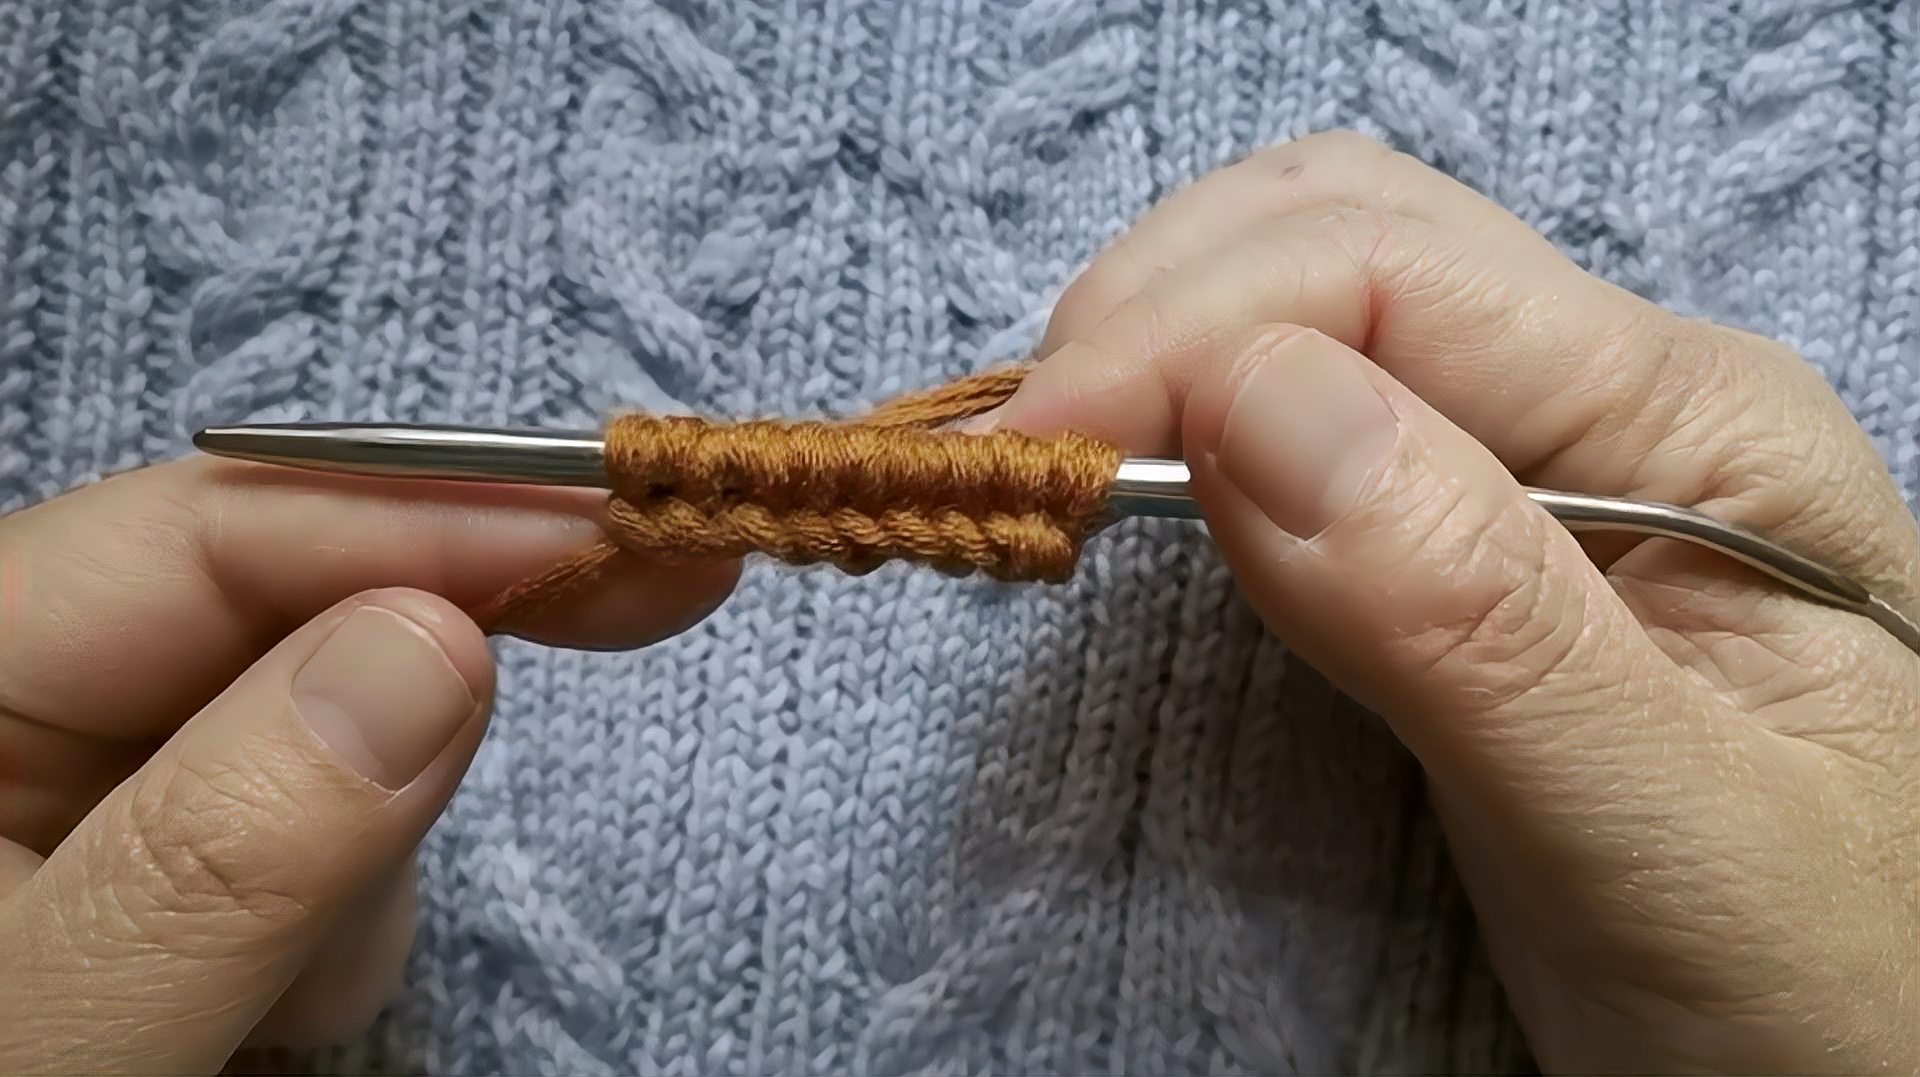 3毛衣起针教程:首先圆形扣起针,然后从第一根签子上退下,将毛线拿上